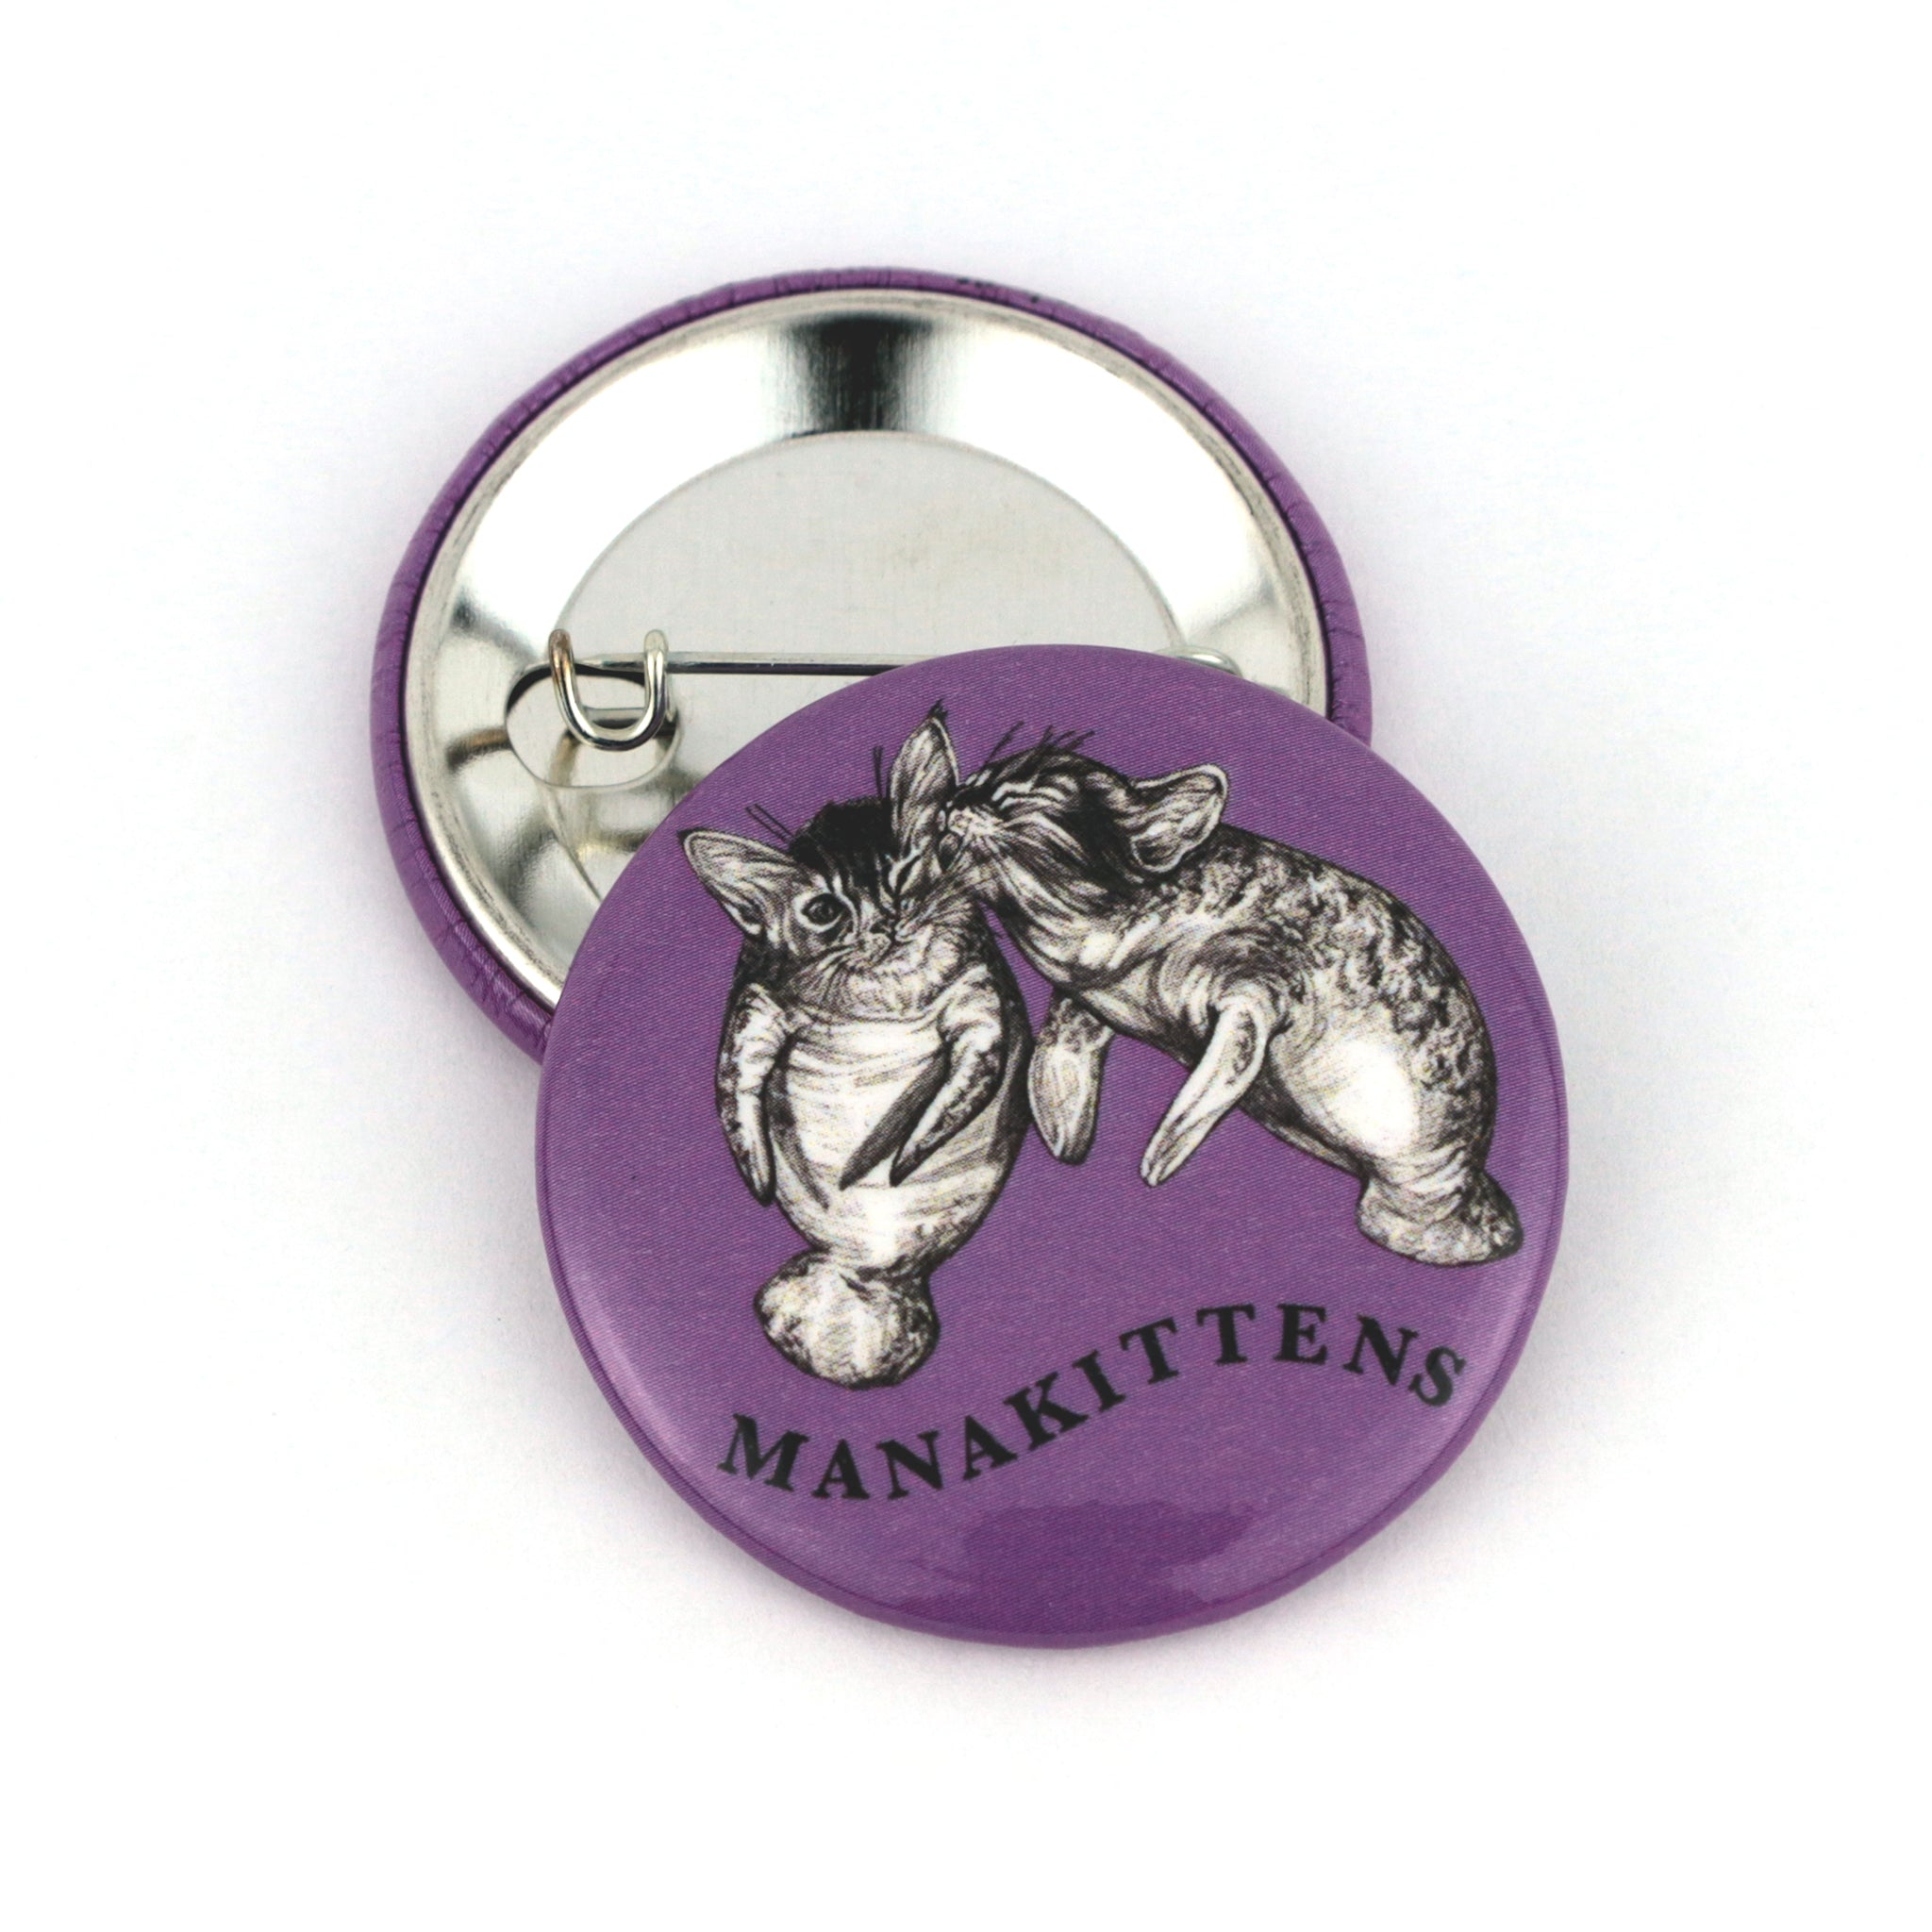 Manakittens | Manatee + Kitten Hybrid Animal | 1.5" Pinback Button